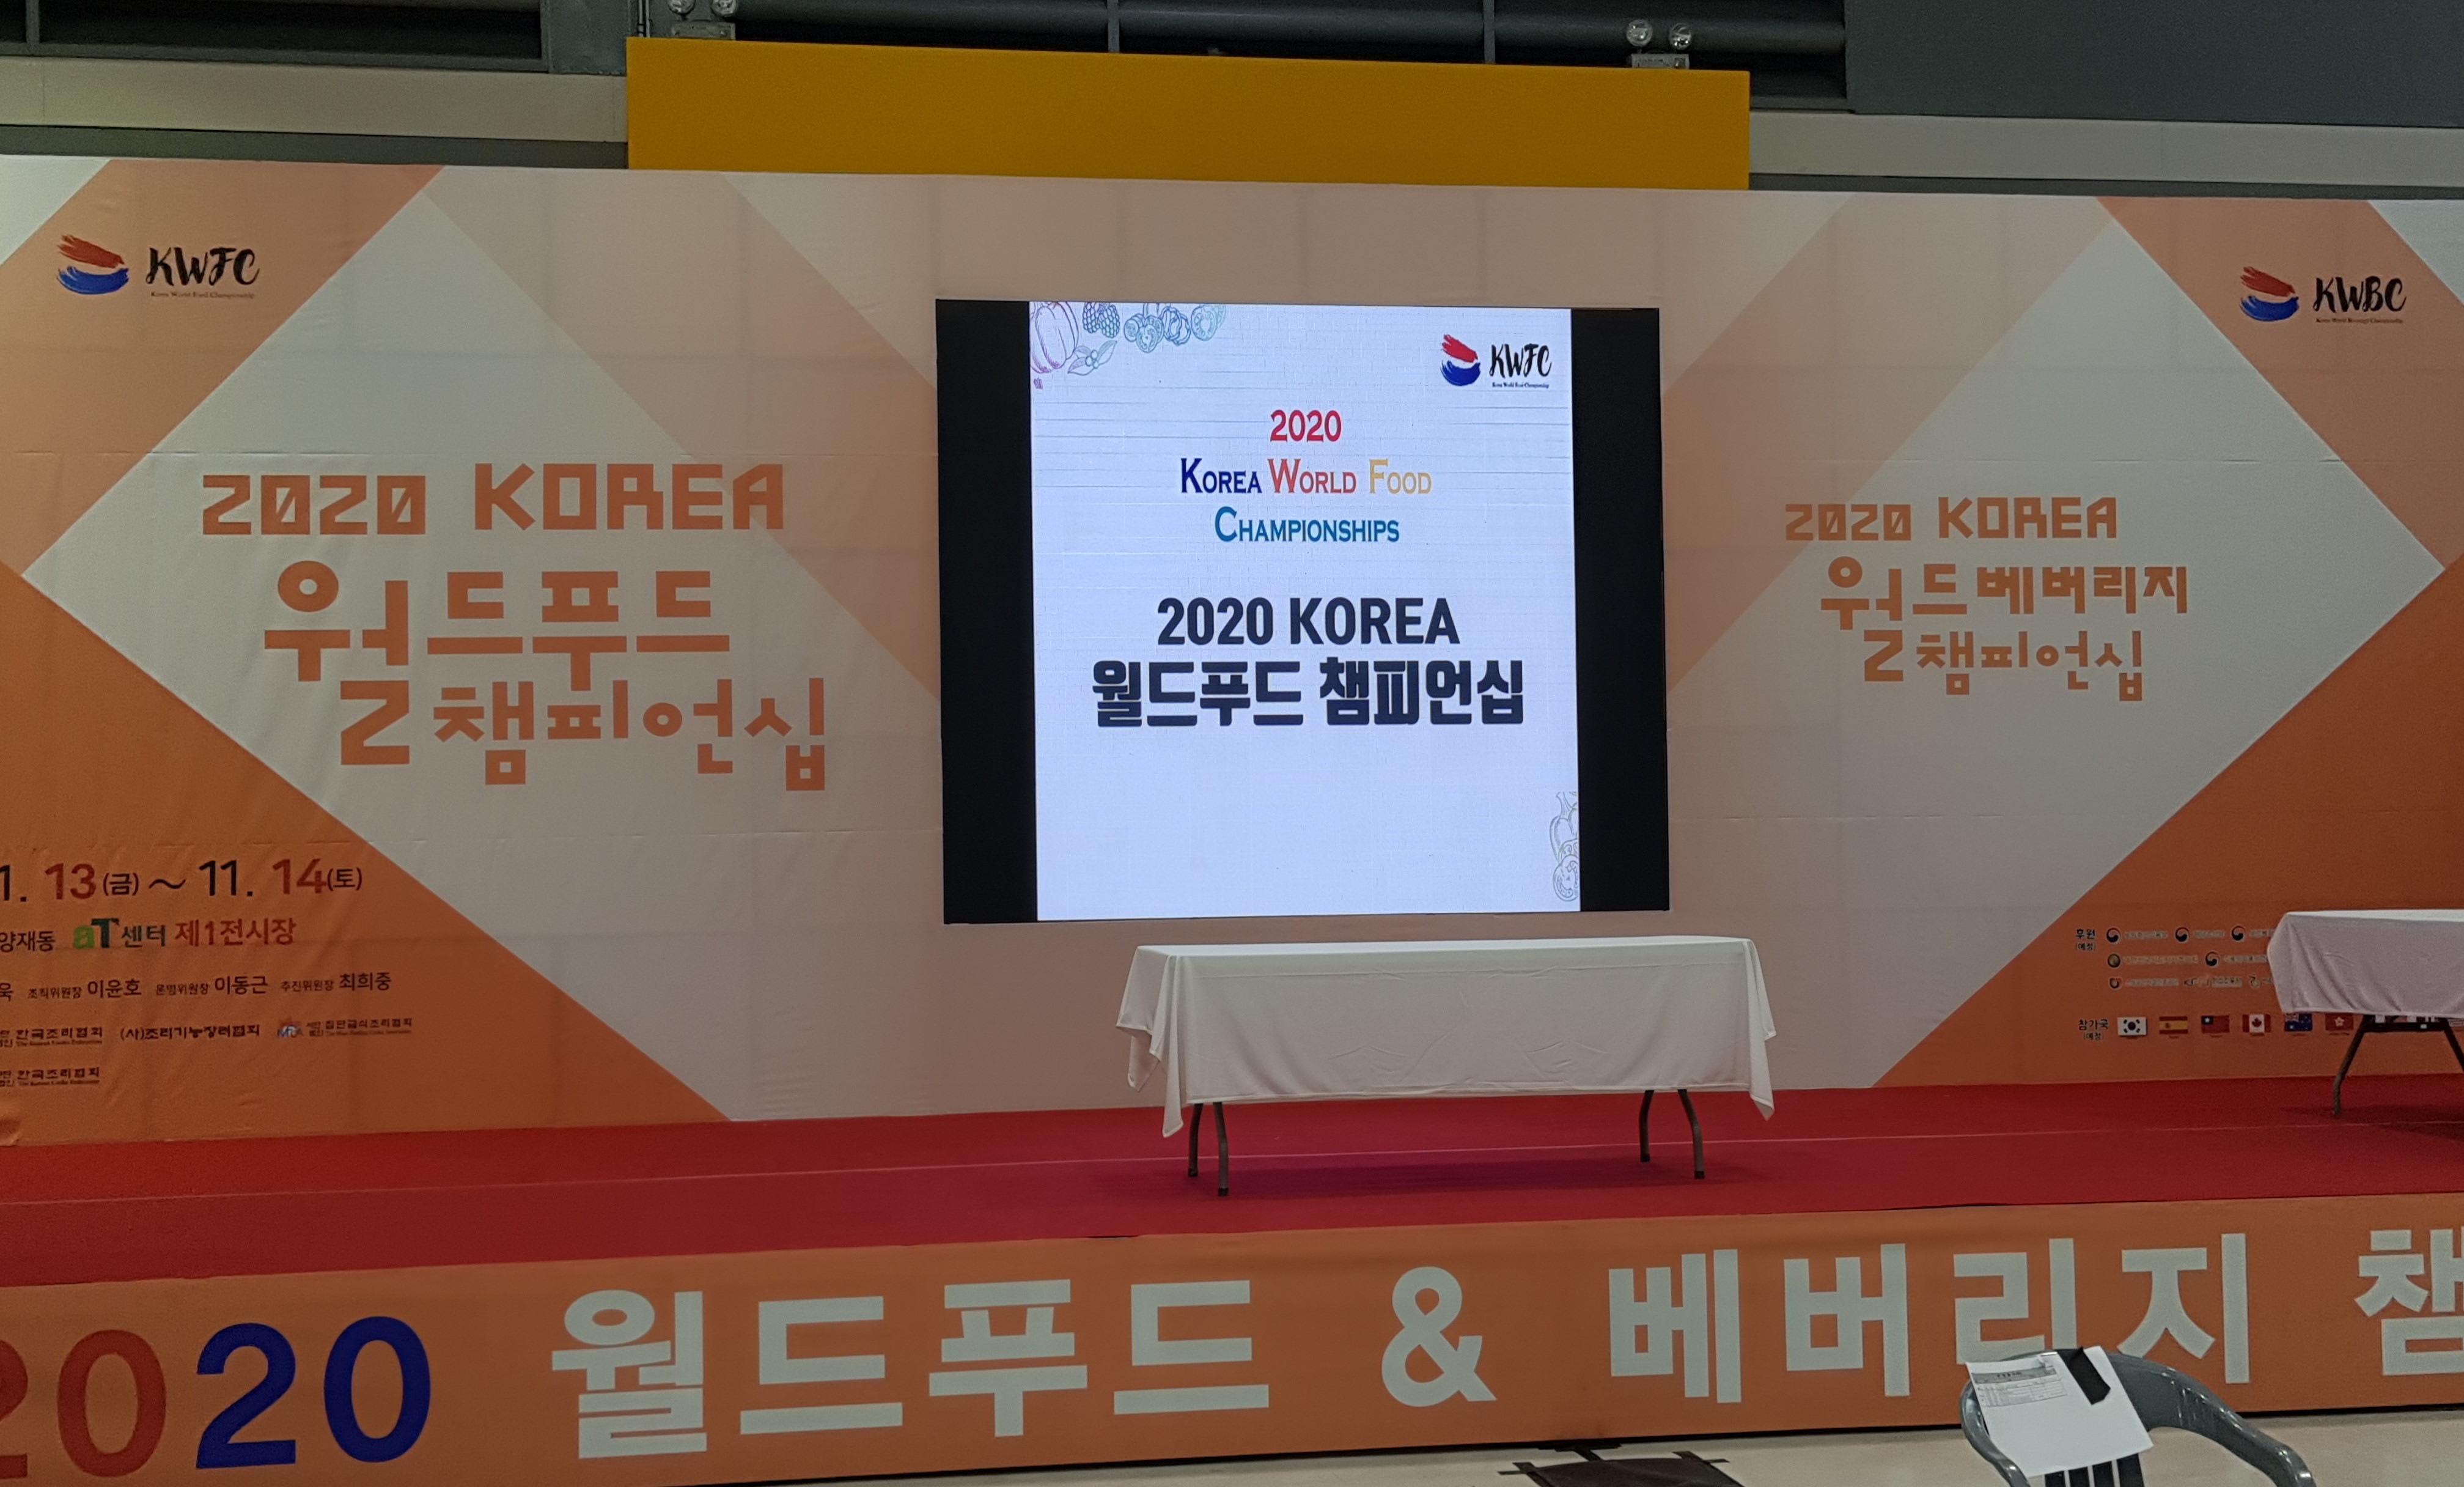 호텔외식조리과, ‘2020 KOREA 월드푸드챔피언십 국제요리경연대회' 대상 및 최우수상 수상